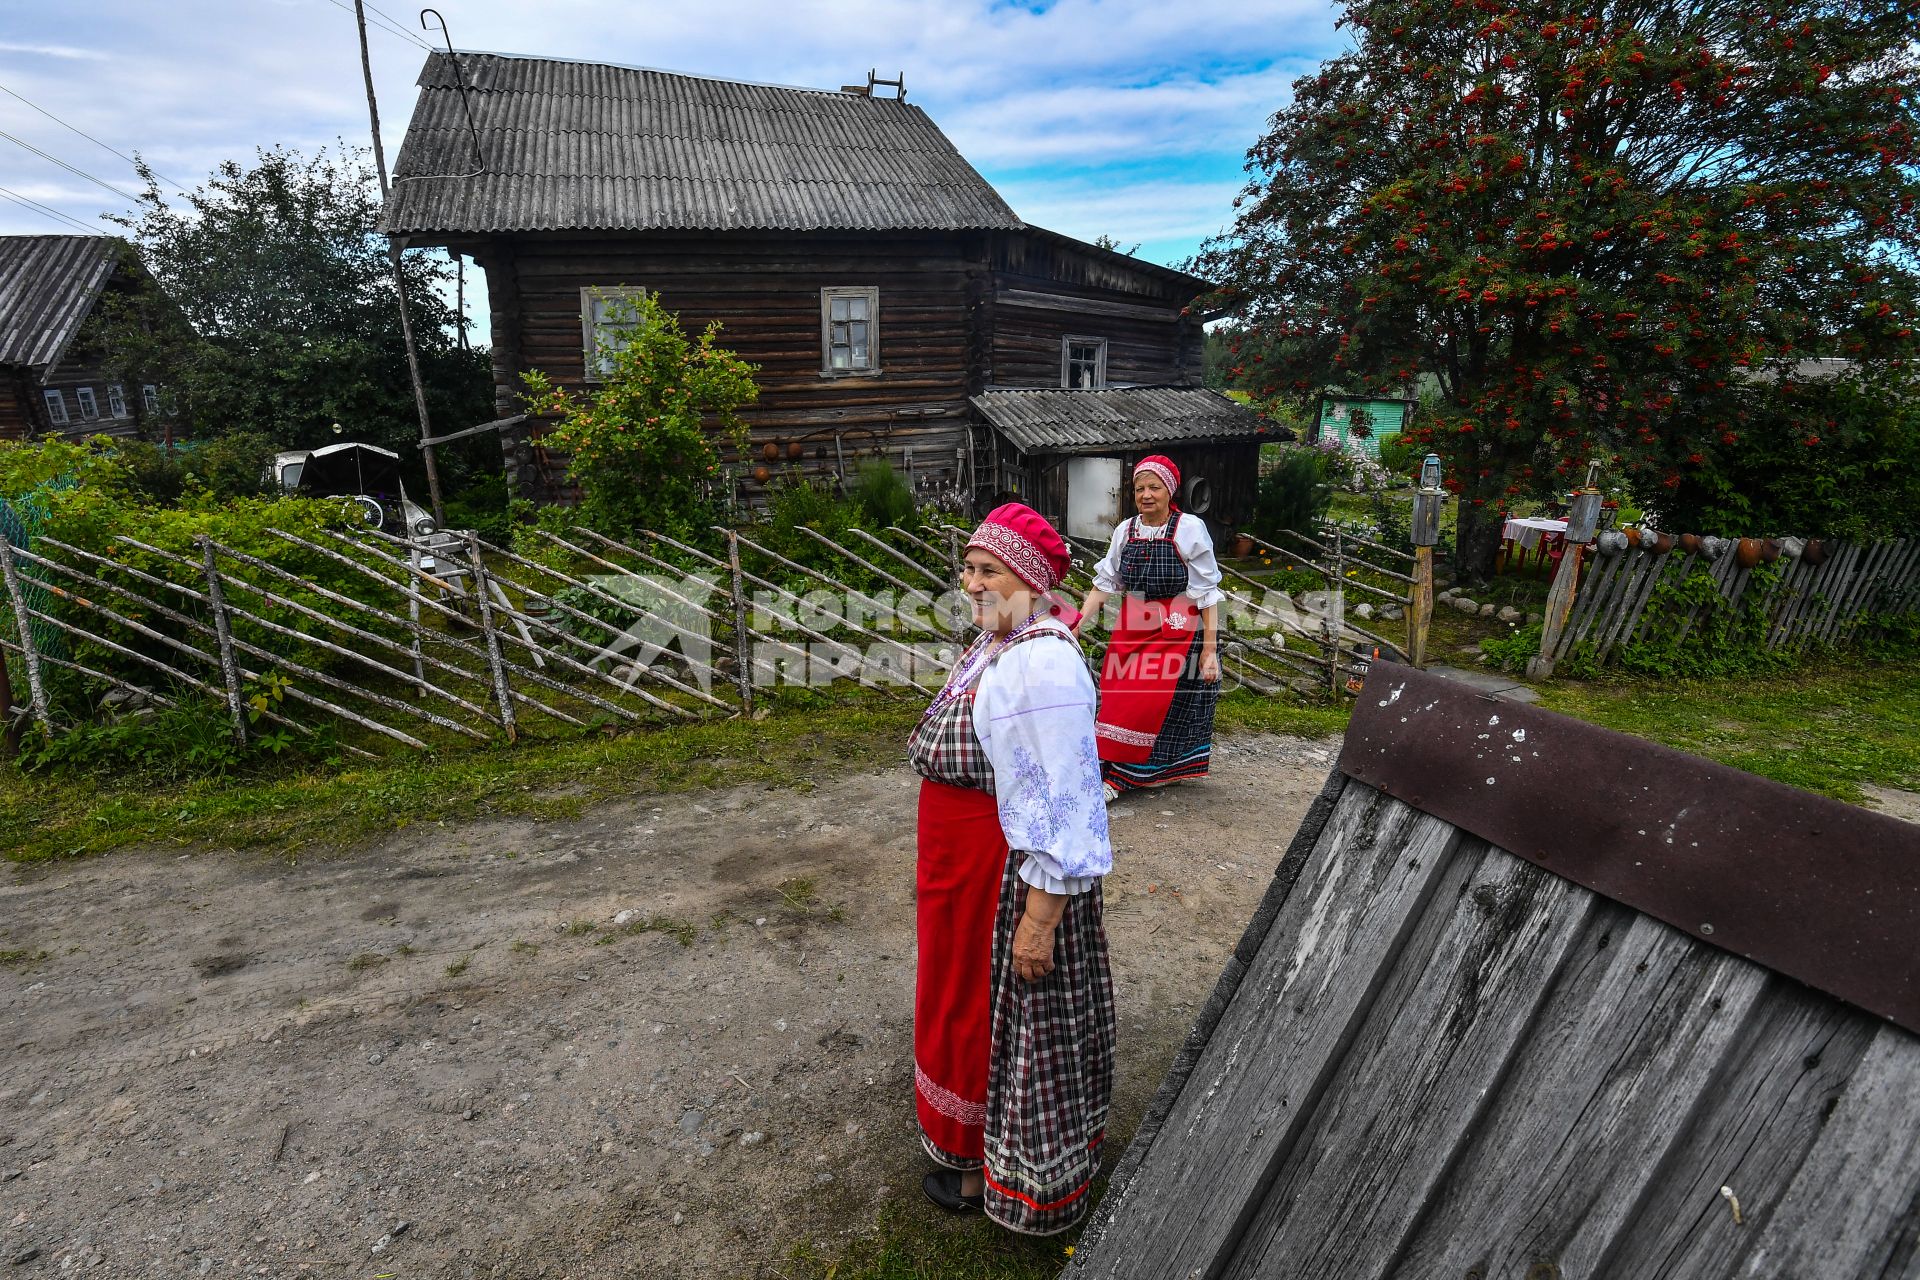 Республика Карелия, деревня Корза. Местные жительницы в национальных карельских костюмахь  на деревенской  улице.